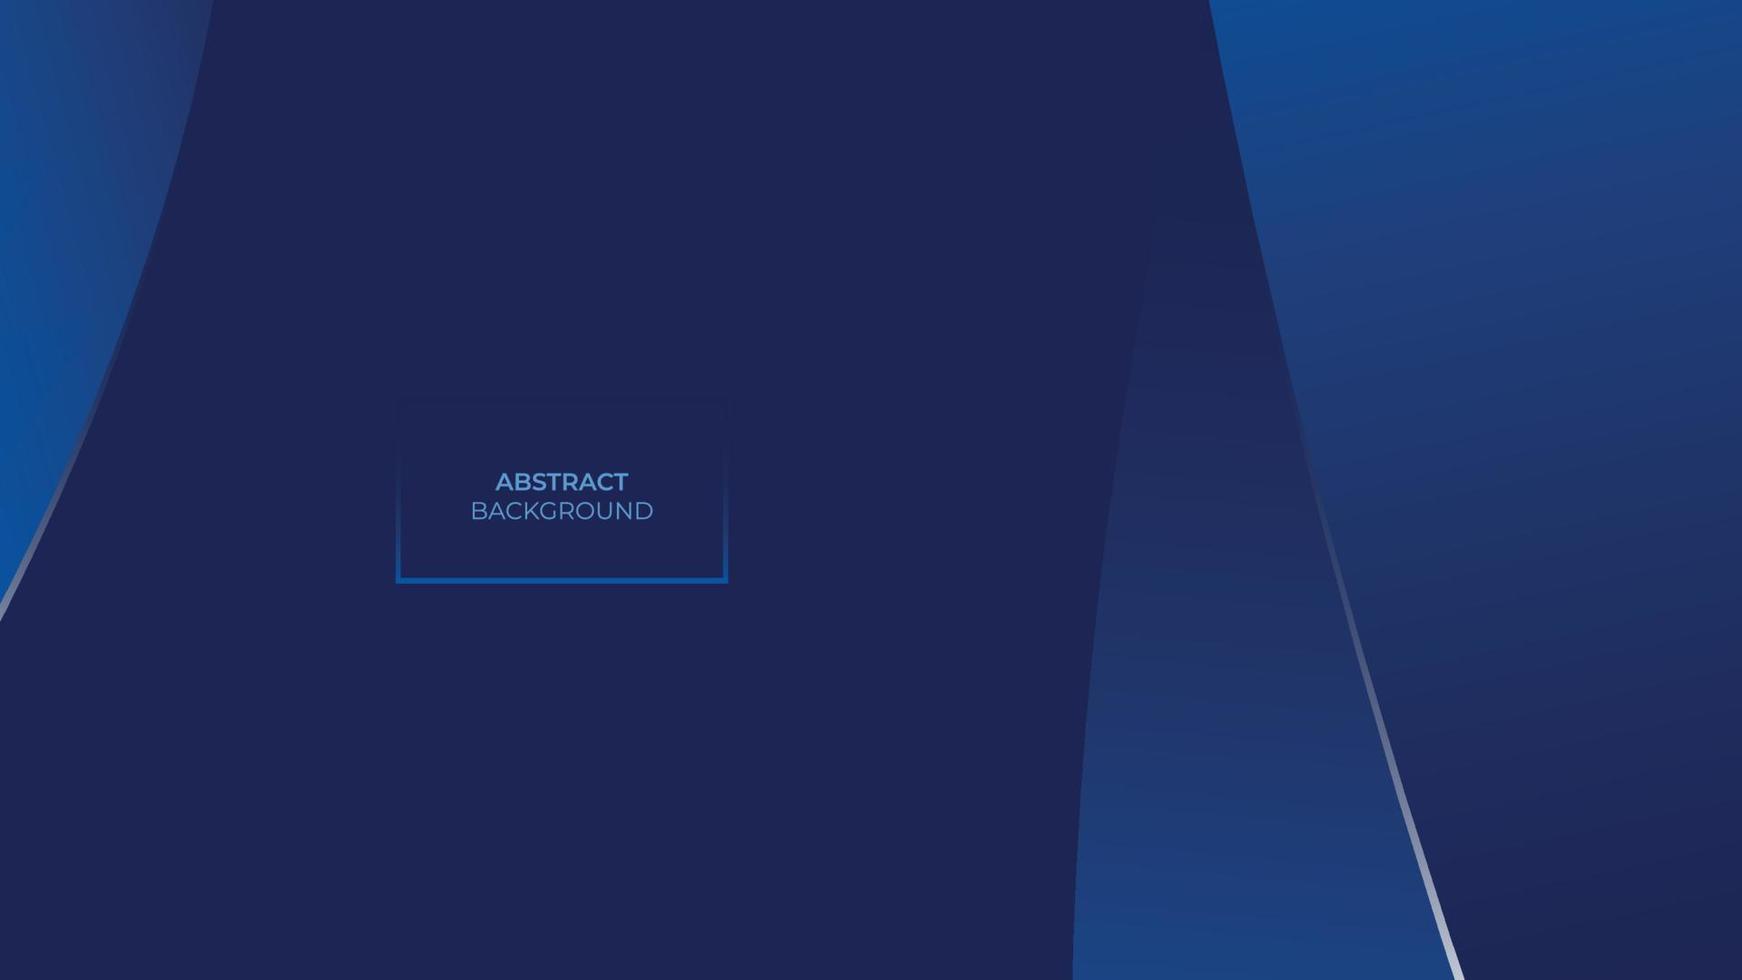 minimalistischer blauer erstklassiger abstrakter hintergrund mit abstrakten formen. kann für Werbung, Marketing, Präsentation, Poster, Broschüre, Website usw. verwendet werden. Vektor-Eps vektor